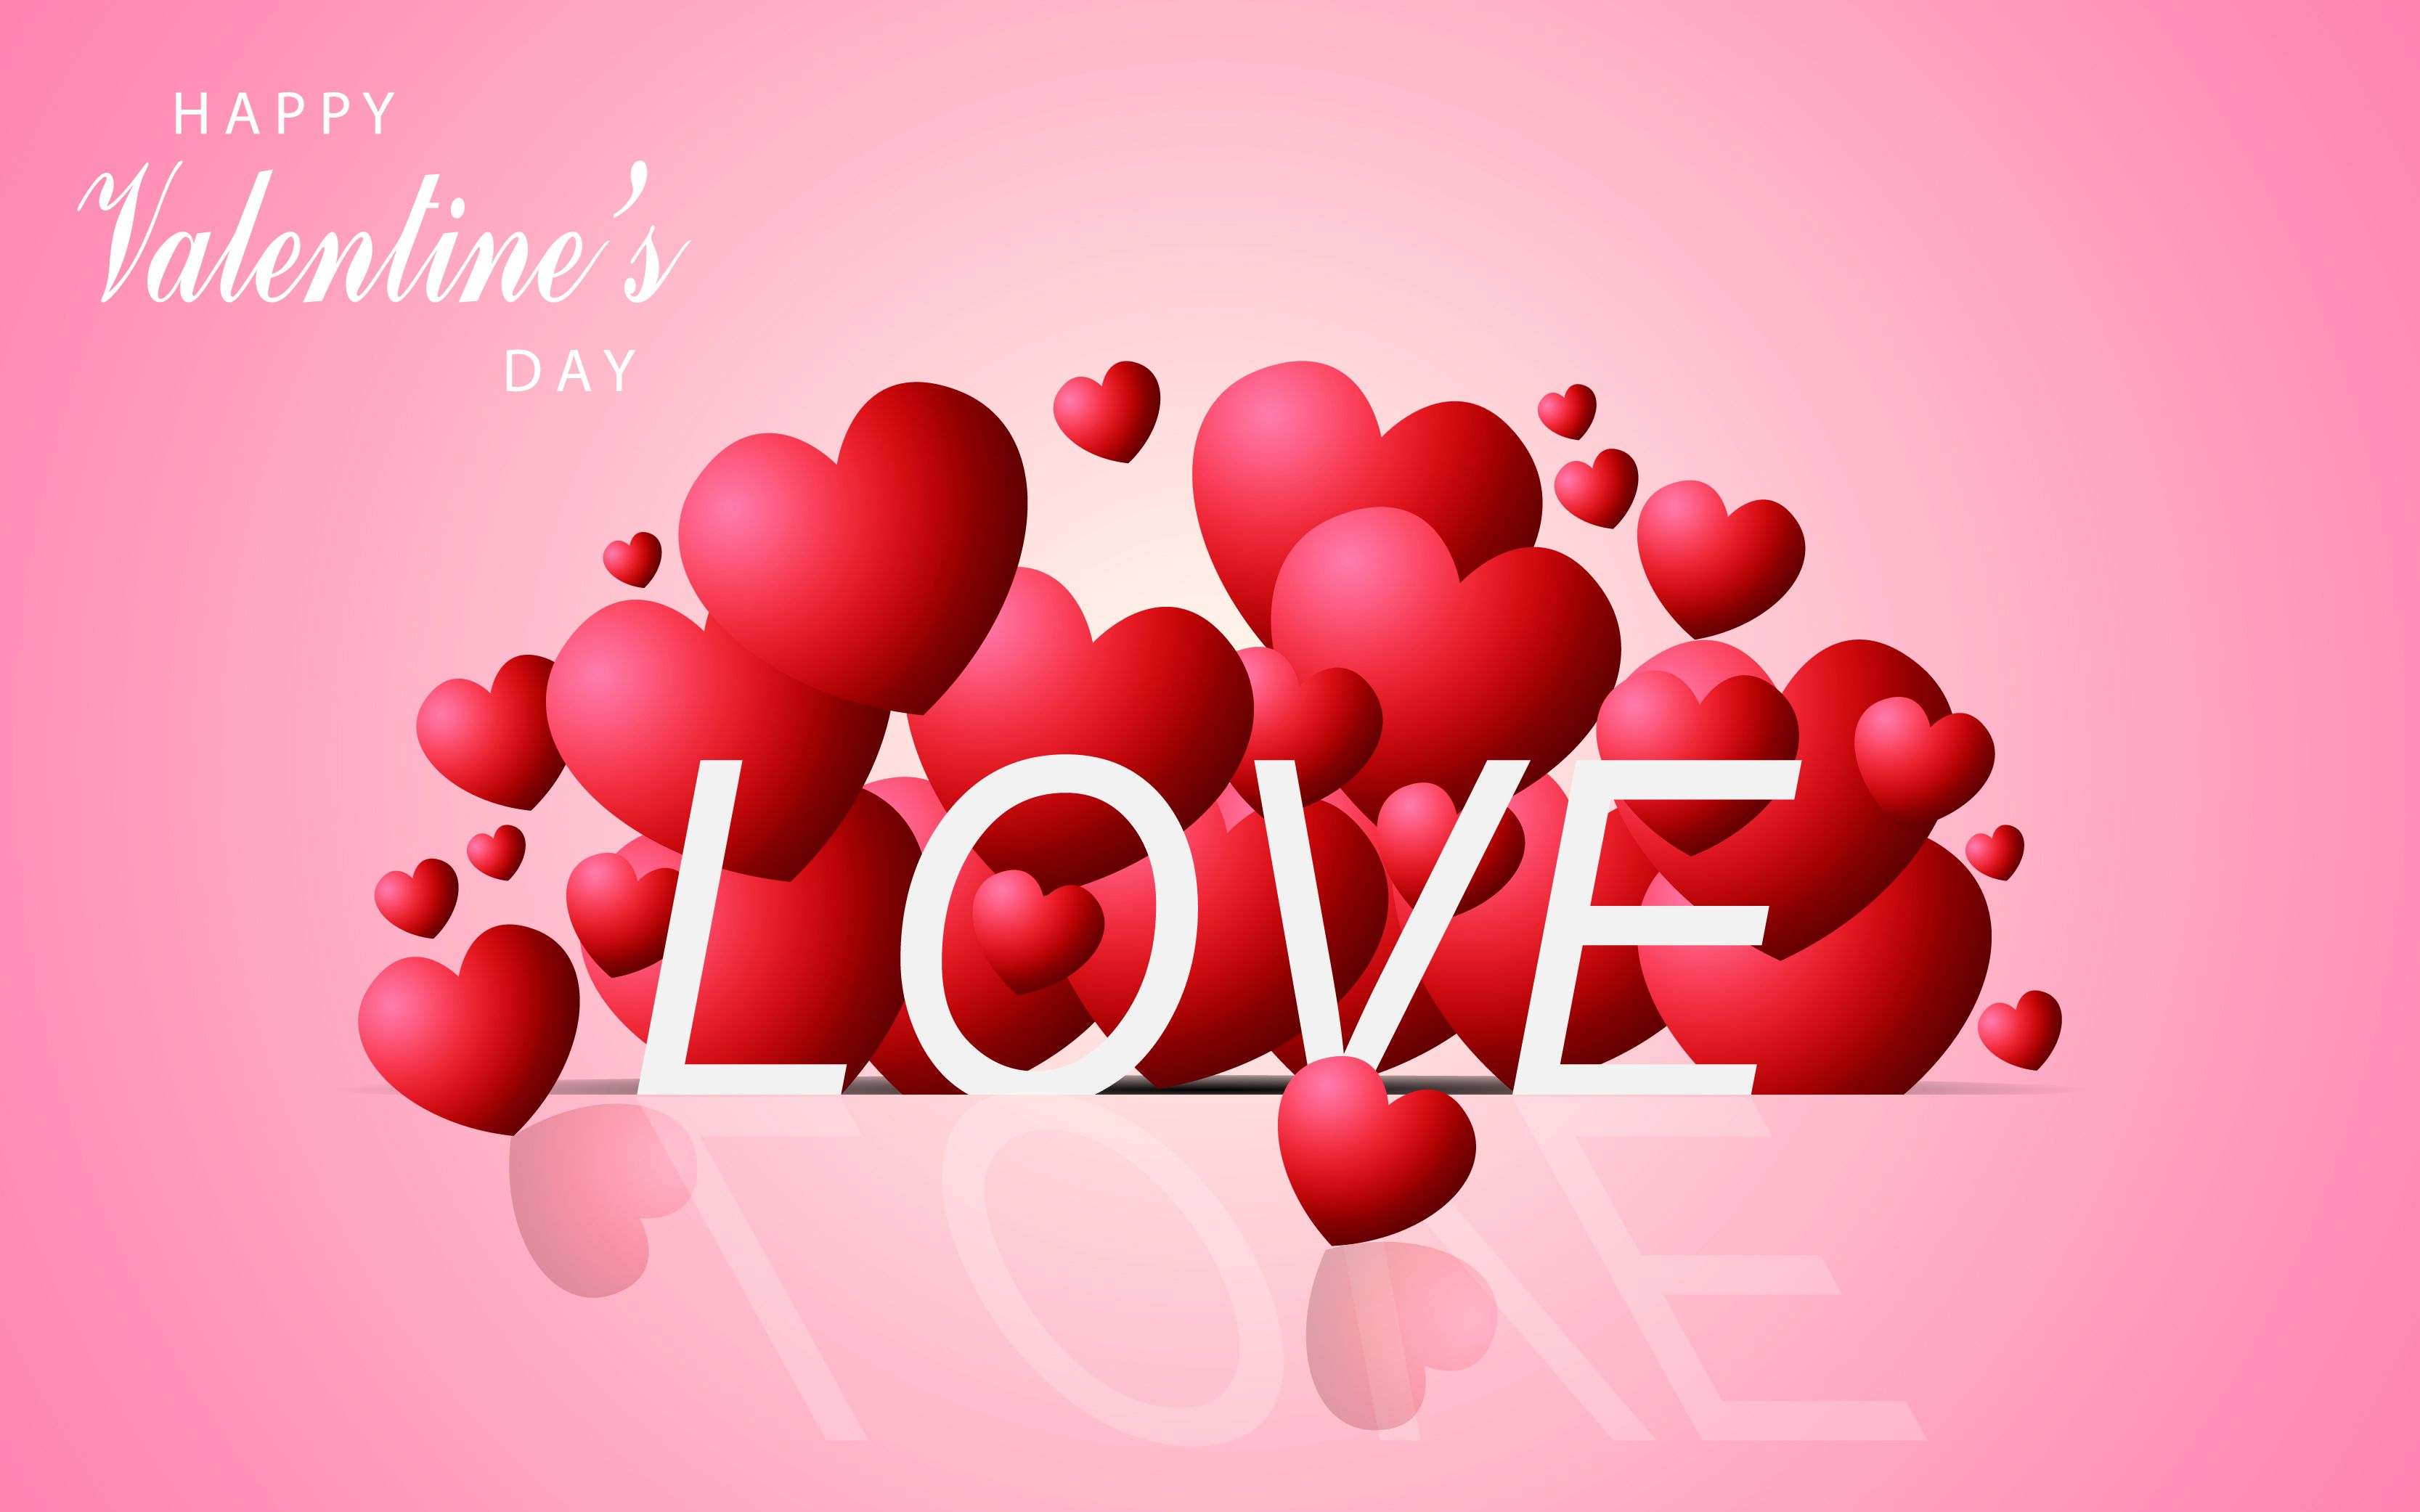 Love theme 06.jpg